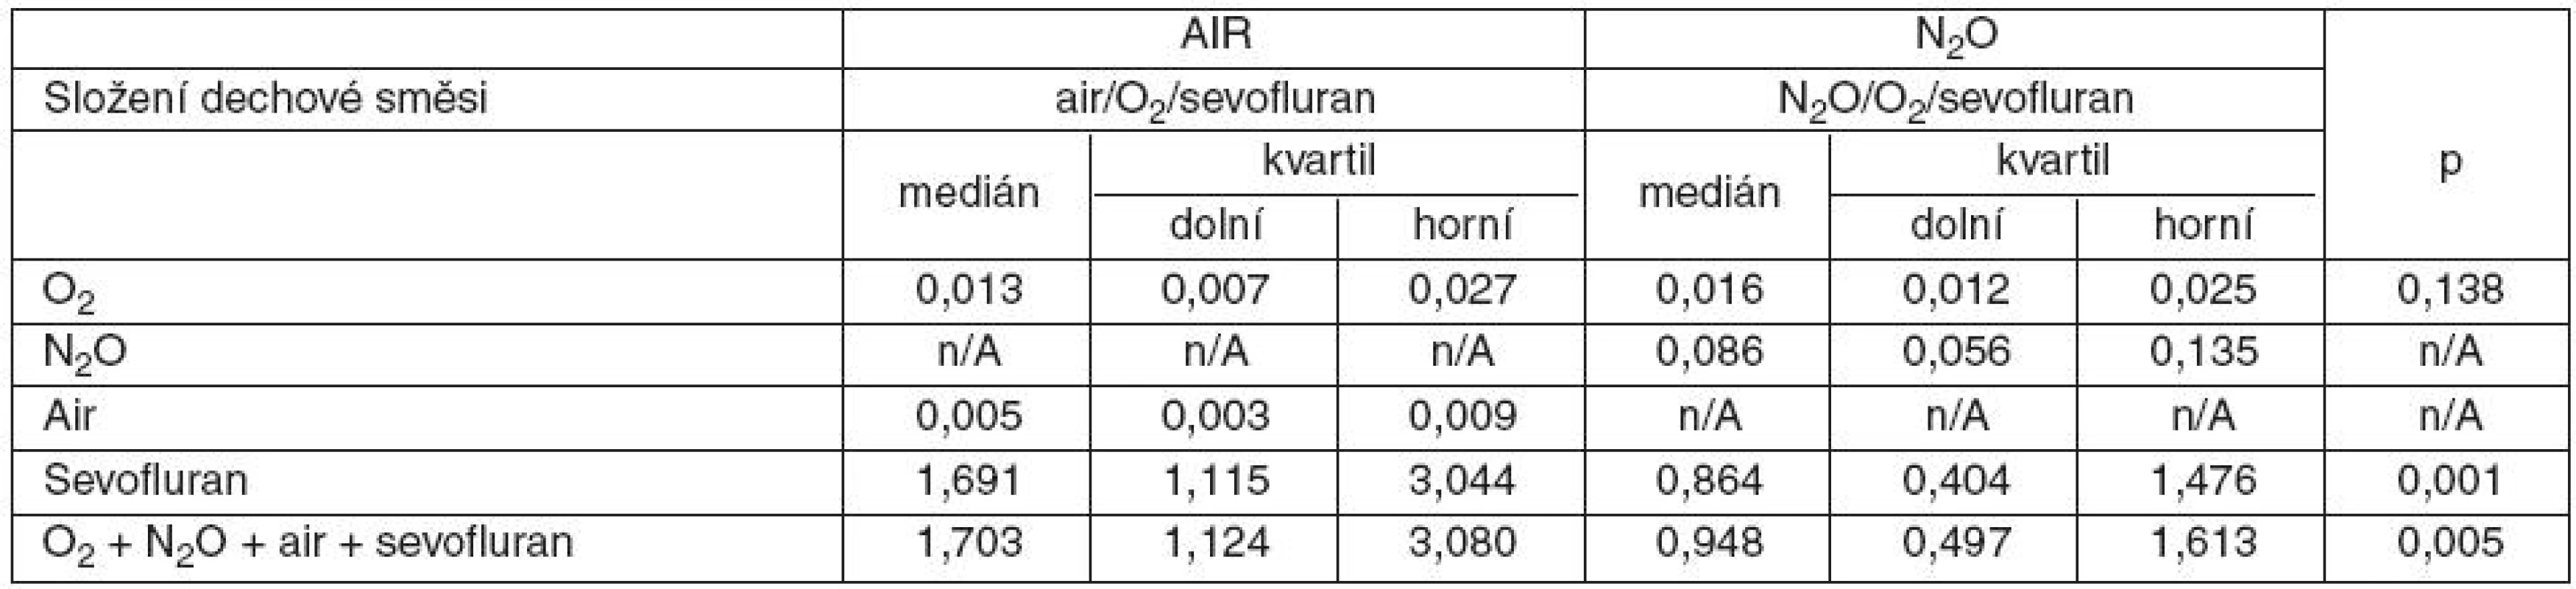 Cena plynů a sevofluranu (Kč . min-1) při „low-flow“ anestezii
